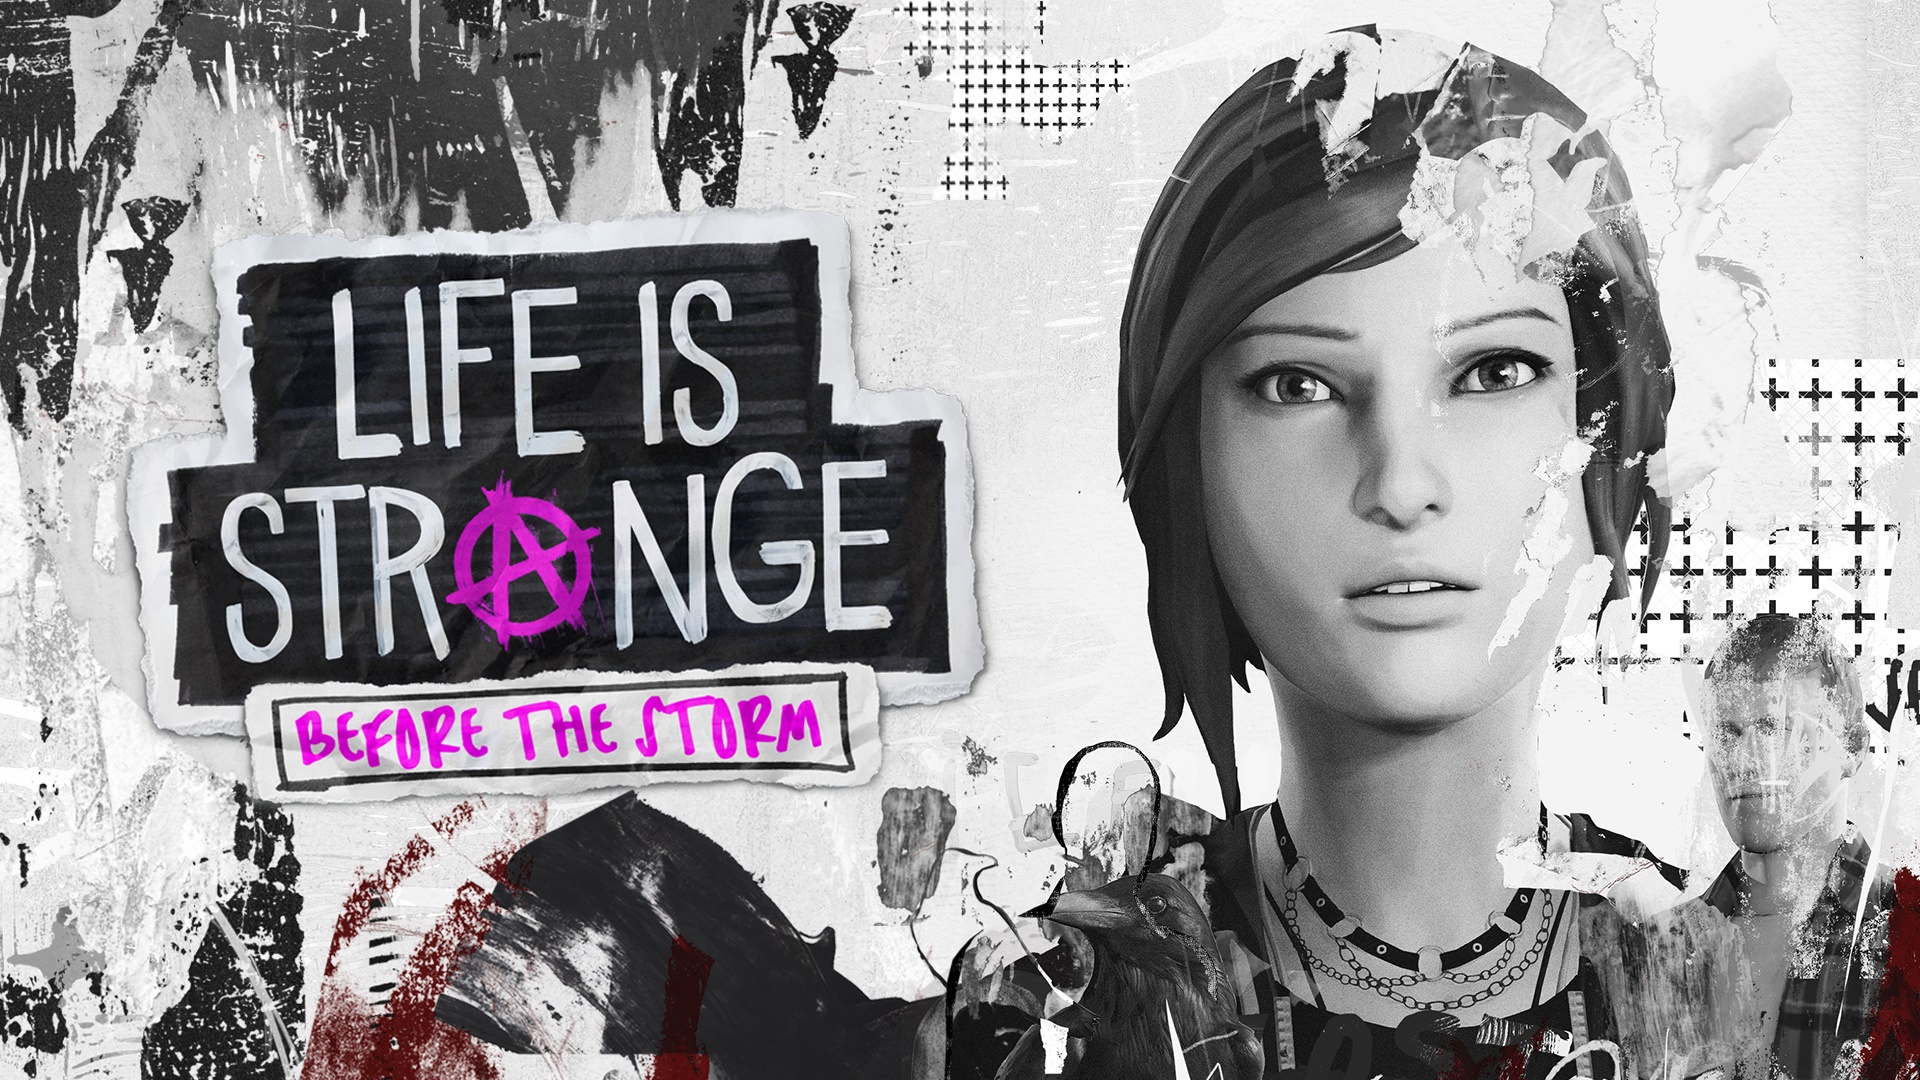 Las voces originales de Max y Chloe regresarán en el episodio adicional de Life is Strange: Before the Storm